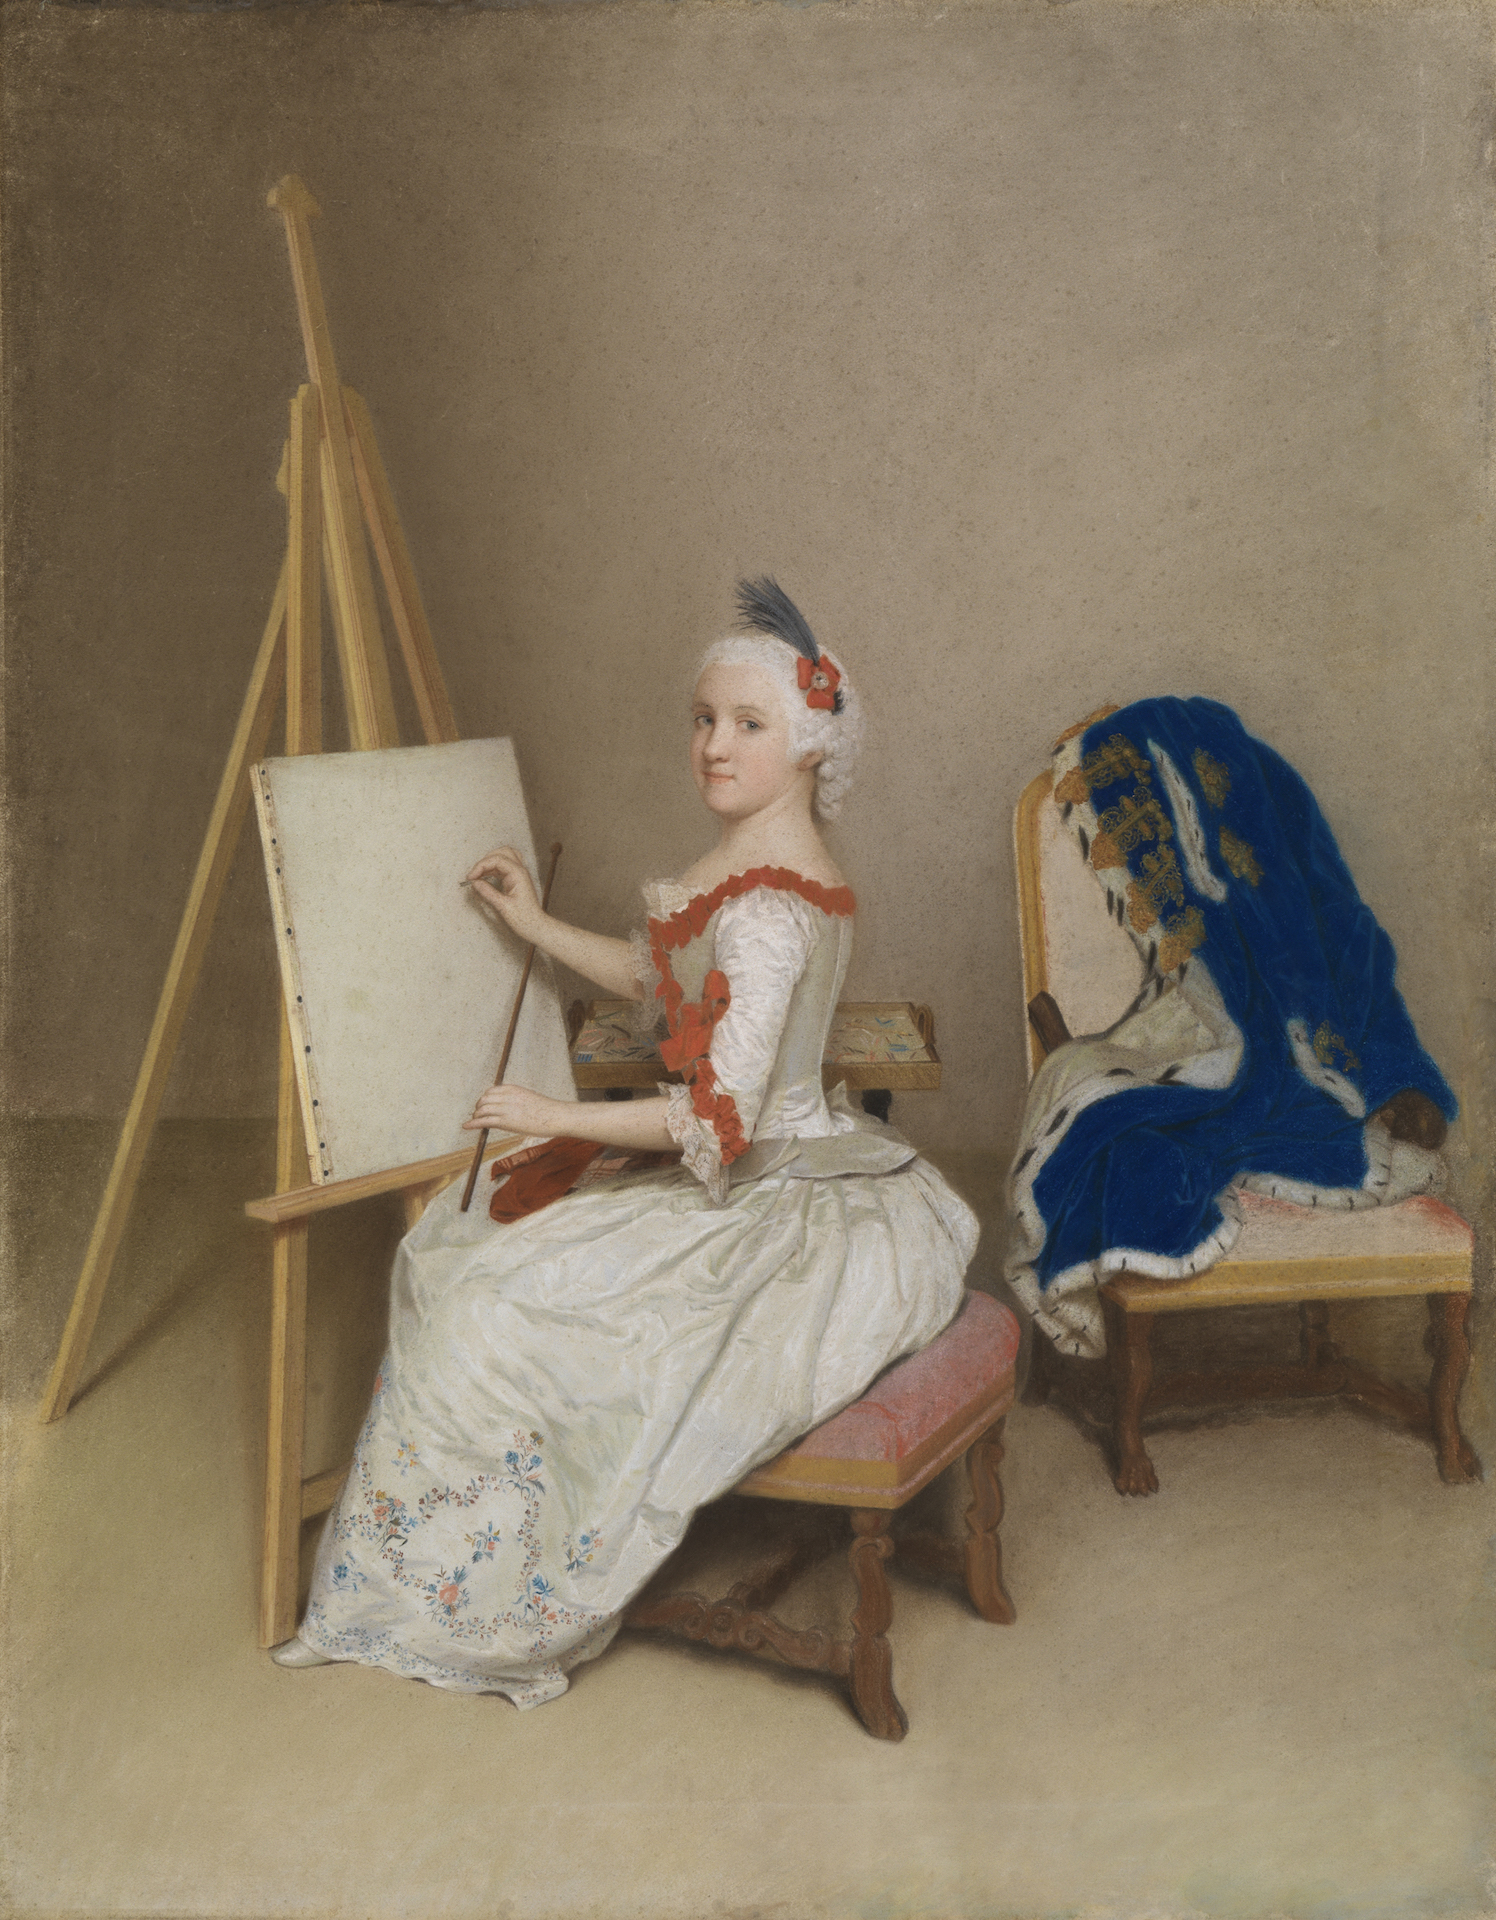 abbildung von Liotards Gemälde von Markgräfin Karoline Luise. Sie sitzt an einer Staffelei und beginnt zu zeichnen.